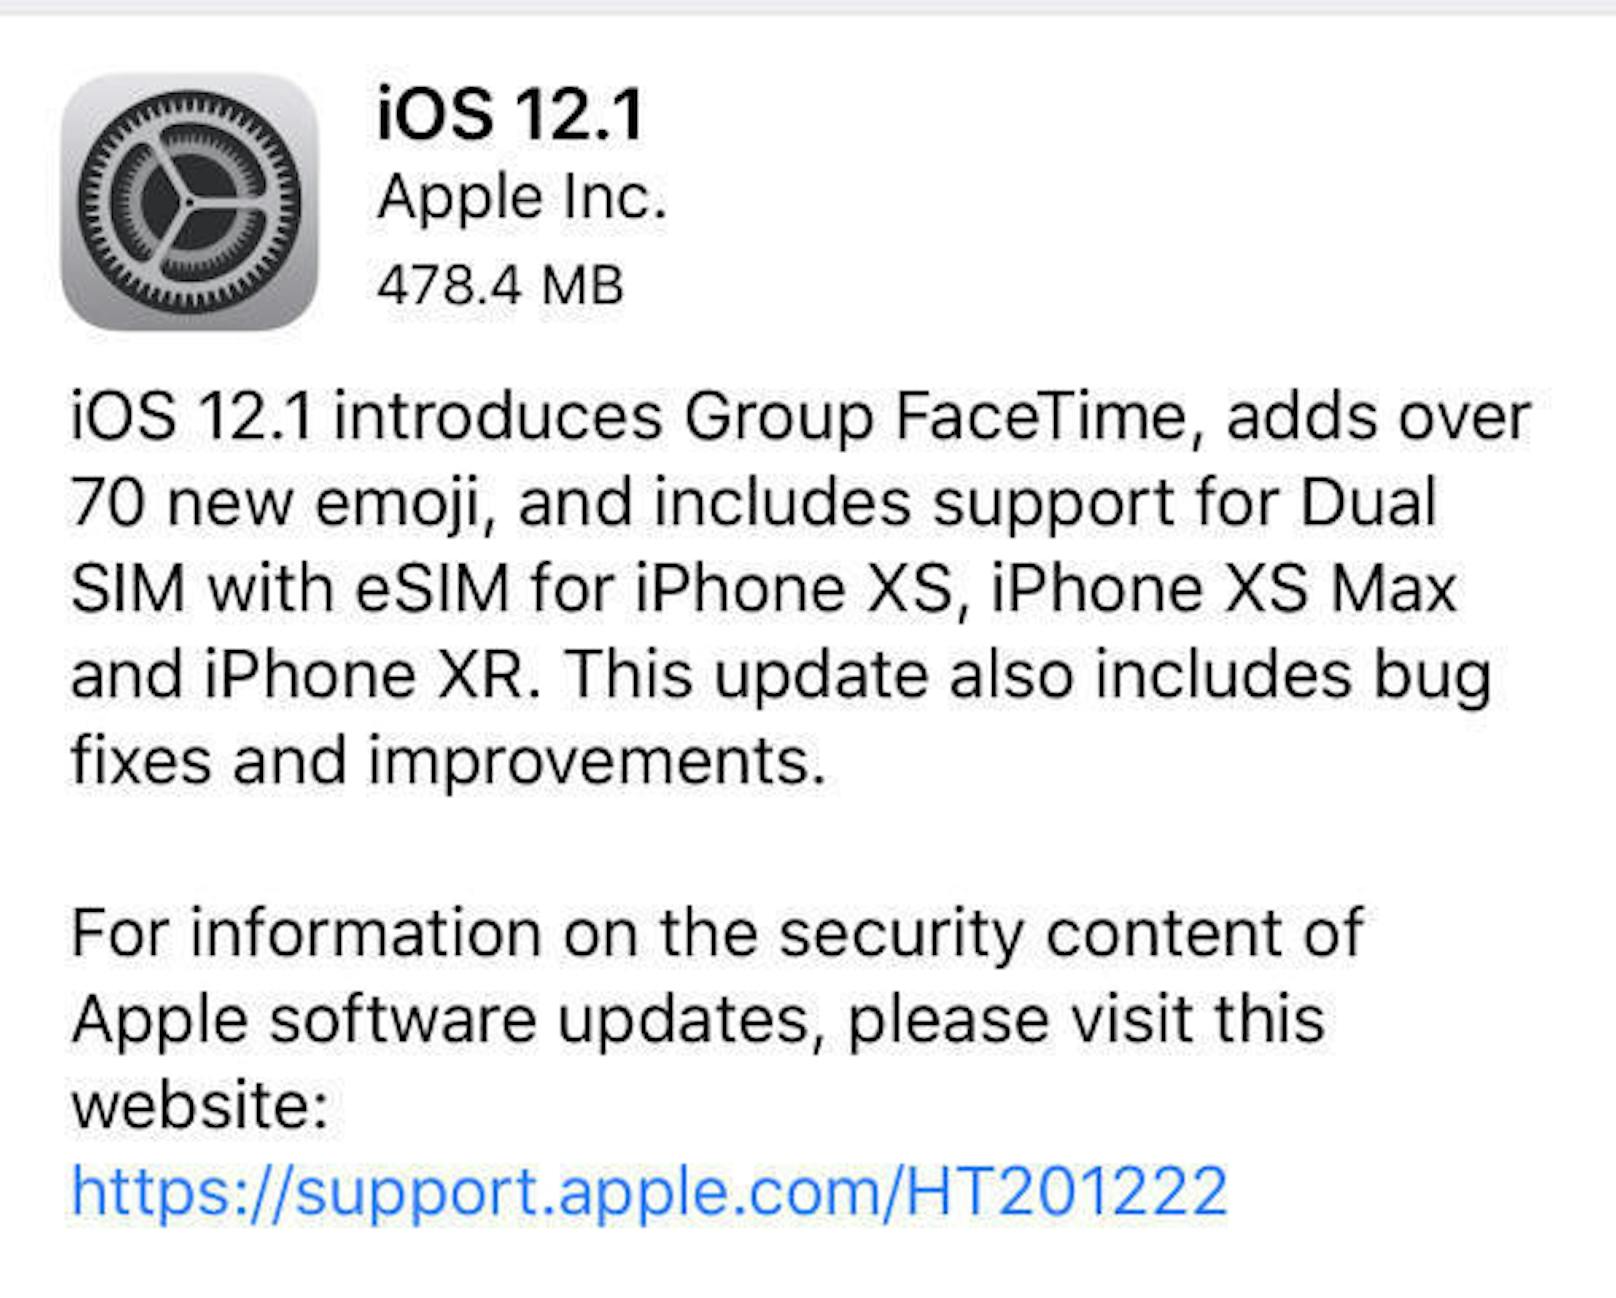 Den Nutzern von mobilen Apple-Geräten empfehlen die Wissenschaftler dringend, das neueste Update (iOS 12.1) zu installieren.